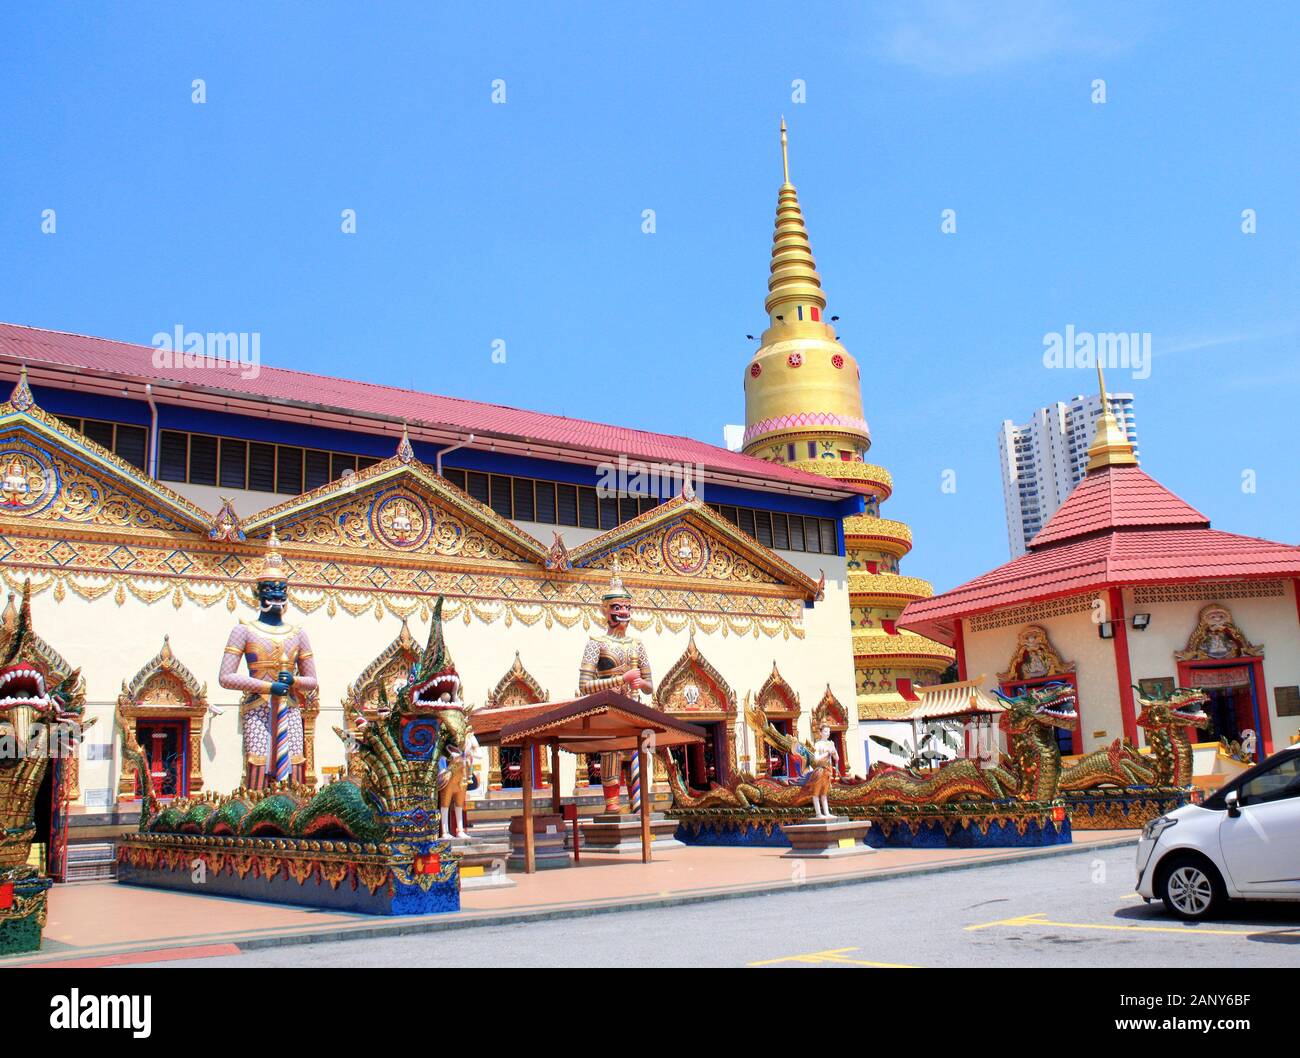 Statuen von kinnaris, Drachen und Schlangen - nagas Pavillon in Pulau Tikus, thai-buddhistische Tempel Wat Chayamangkalaram, berühmte Touristenattraktion in George Stockfoto